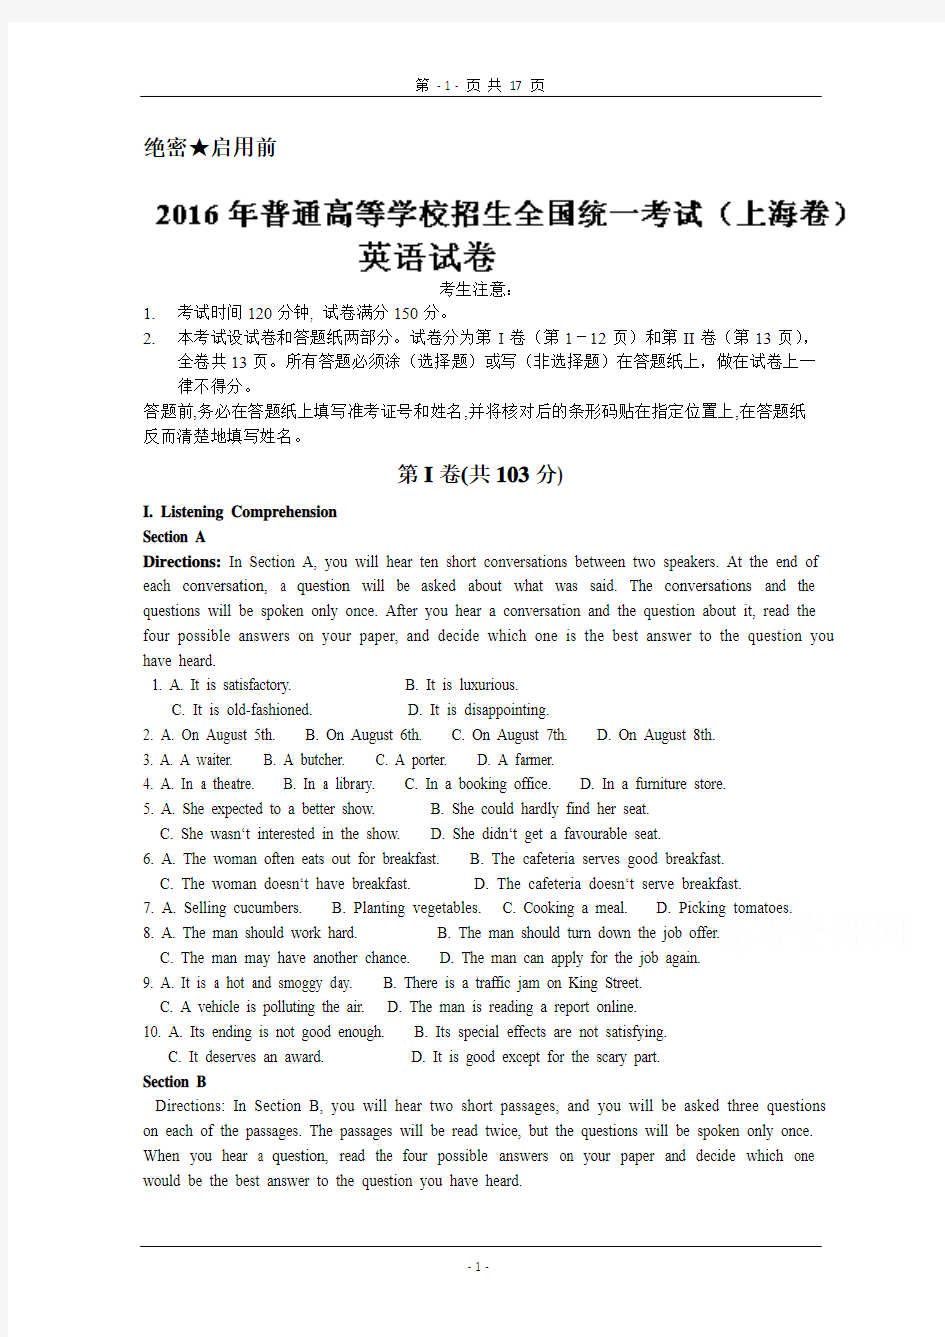 2016年高考真题——英语(上海卷) Word版含解析(正式版)